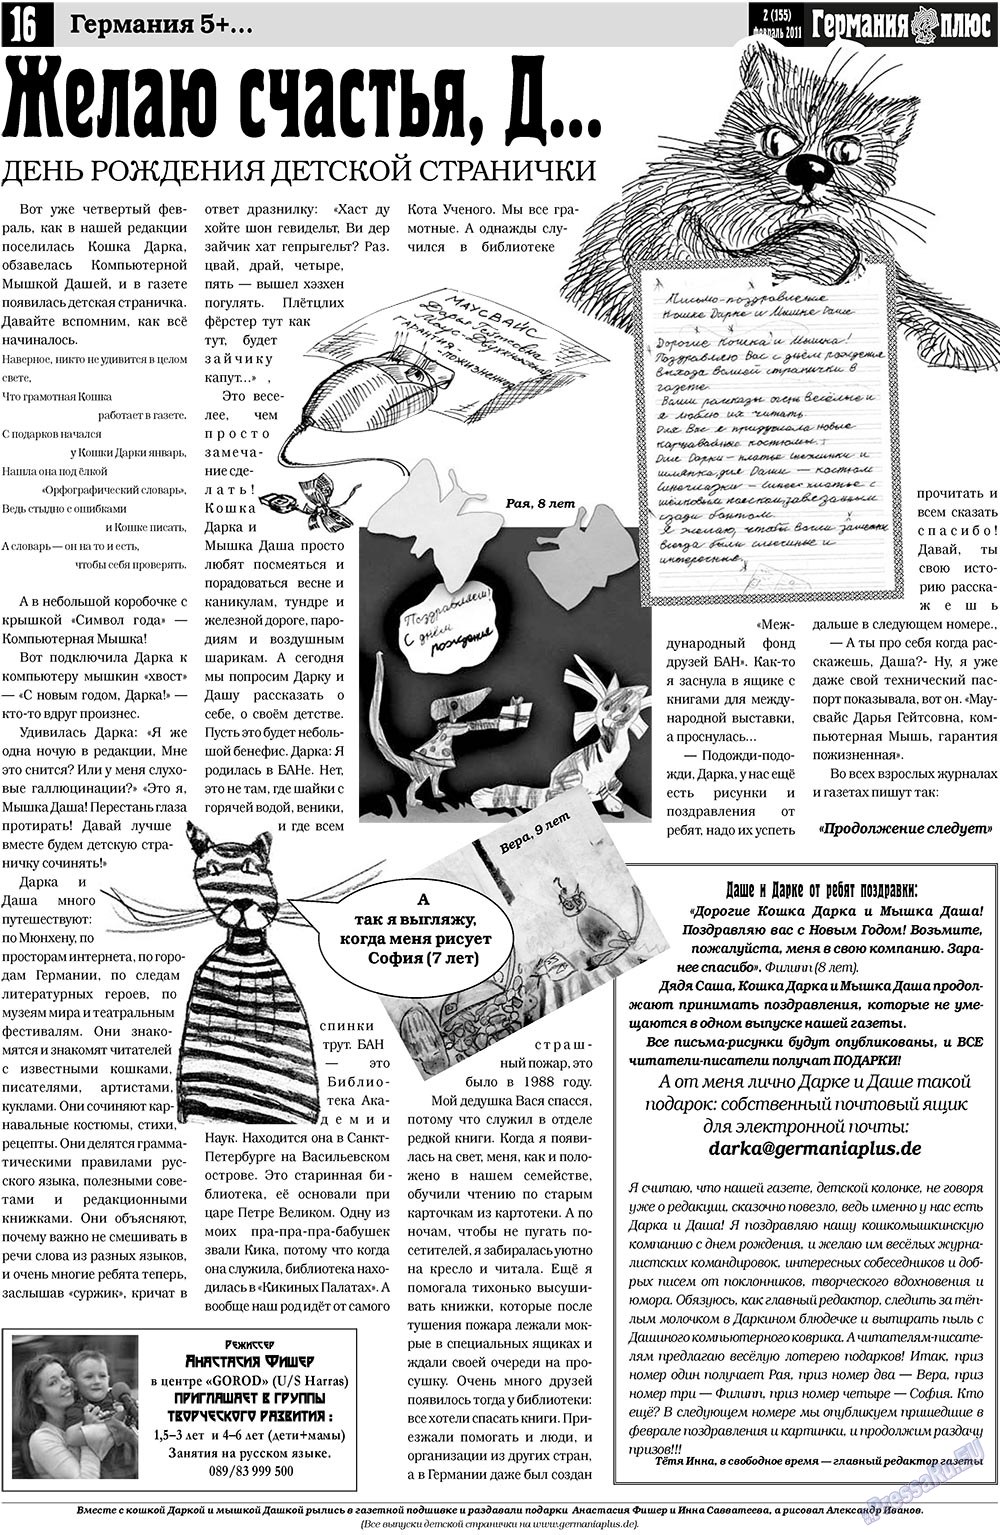 Германия плюс (газета). 2011 год, номер 2, стр. 16